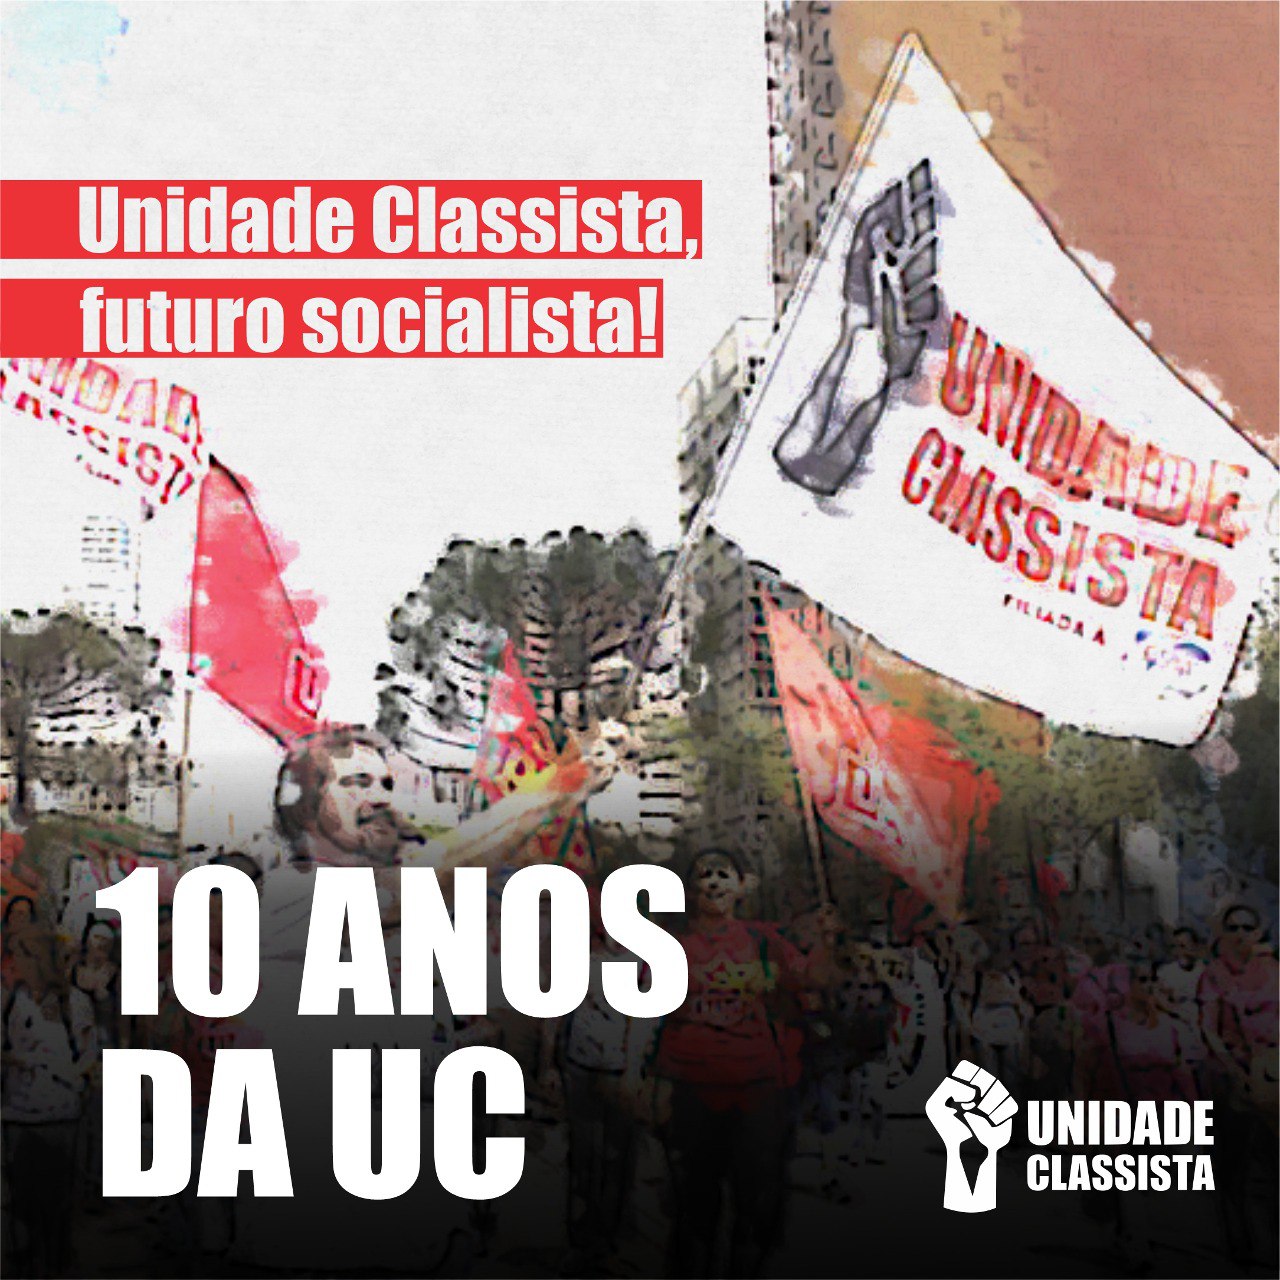 10 ANOS DO PRIMEIRO CONGRESSO DA UNIDADE CLASSISTA